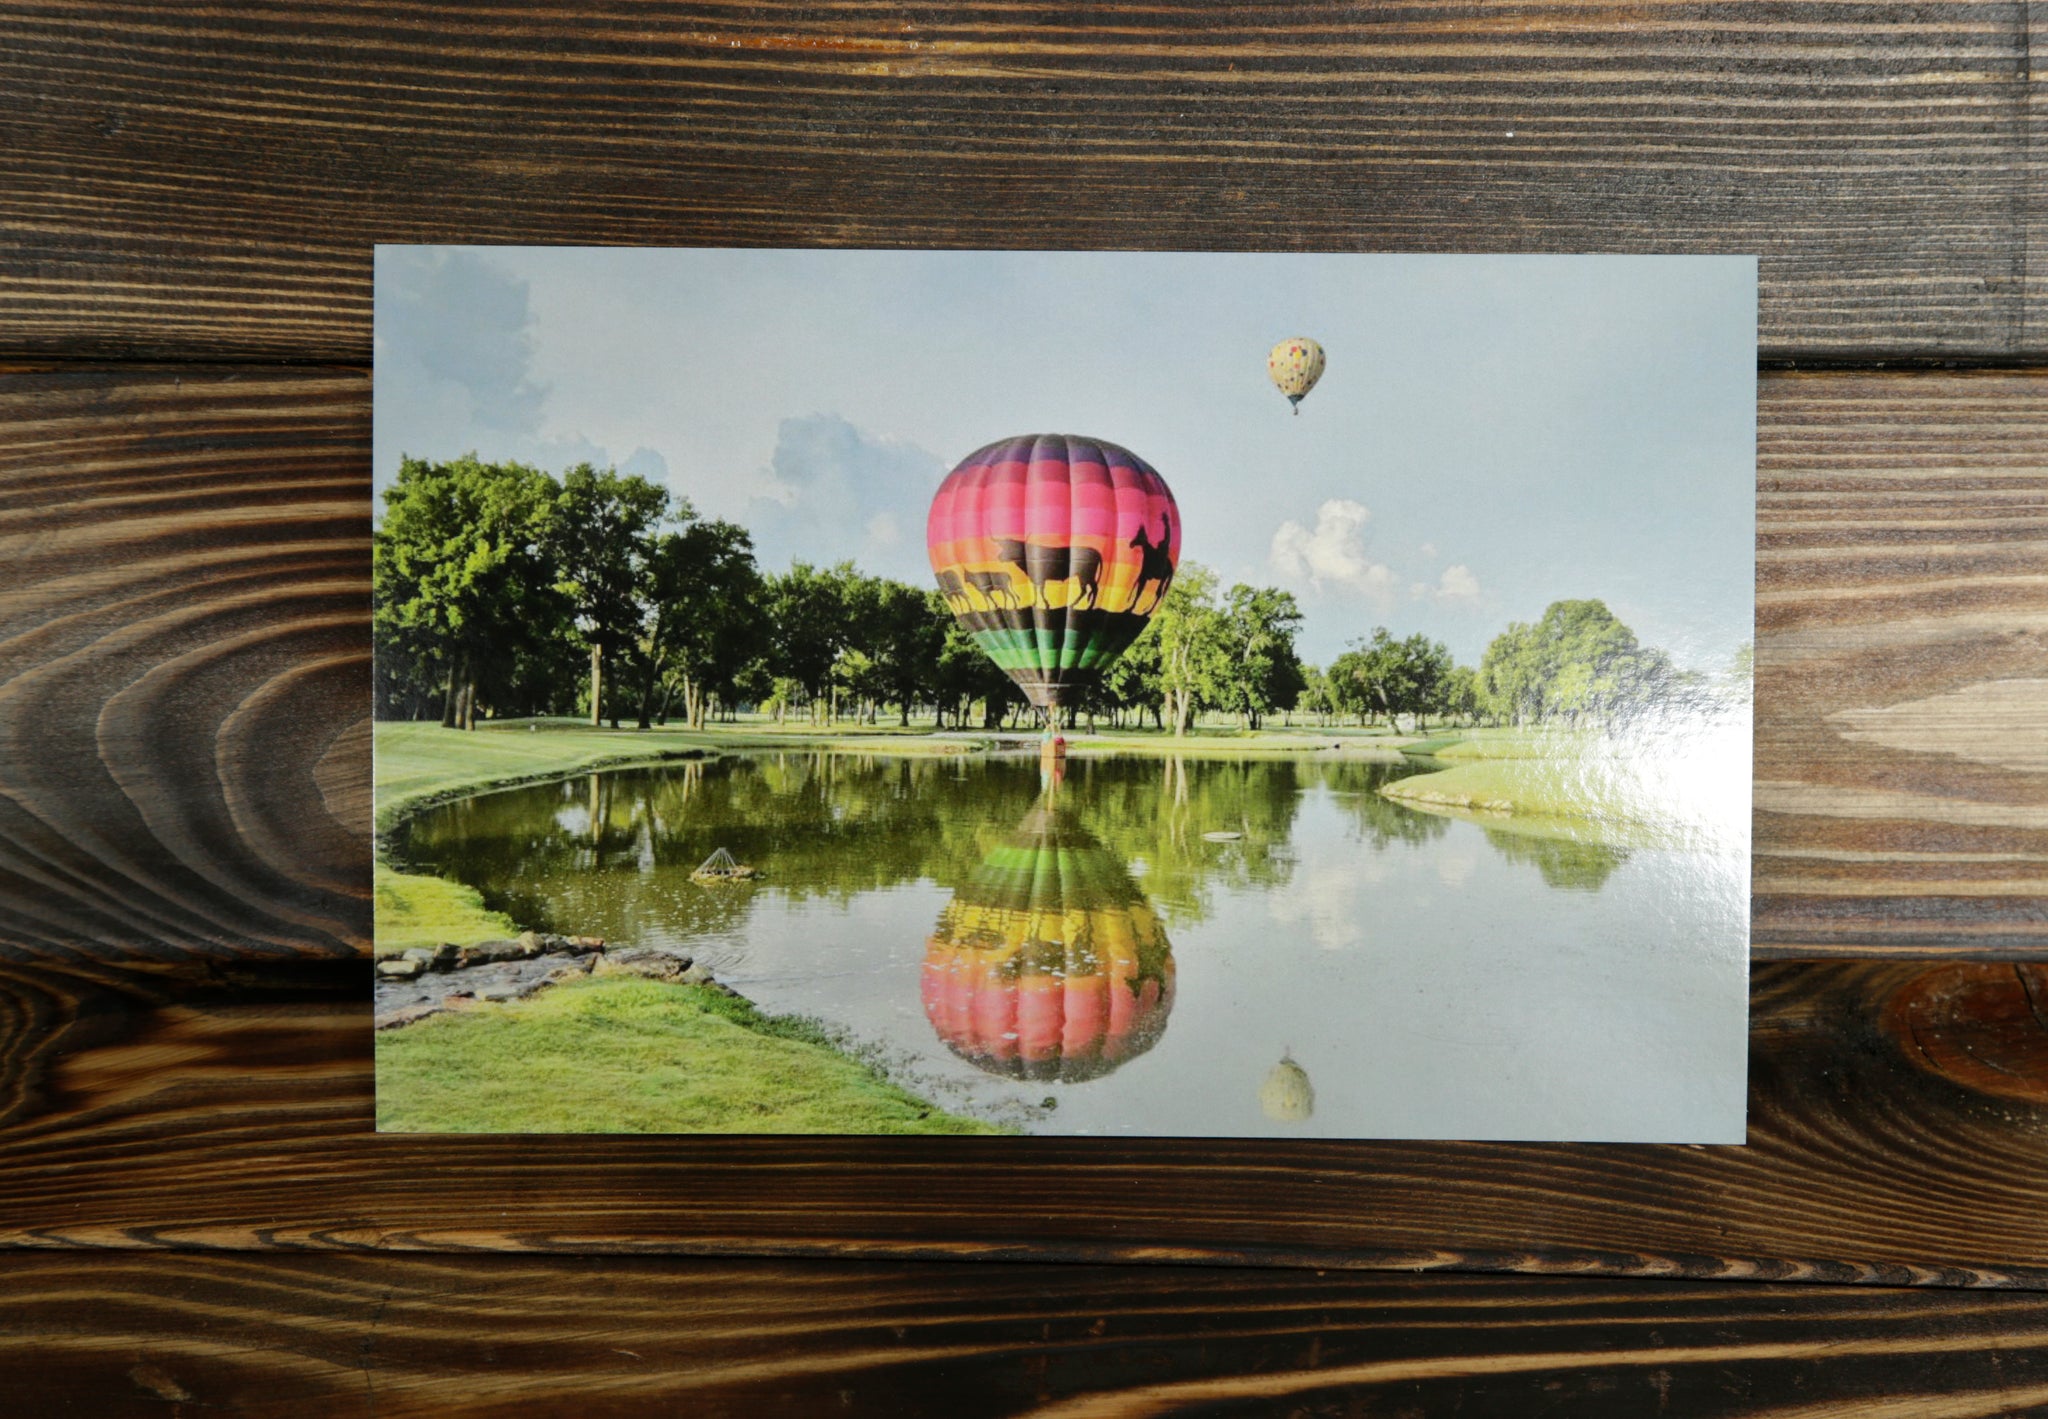 Hot Air Balloon Postcard